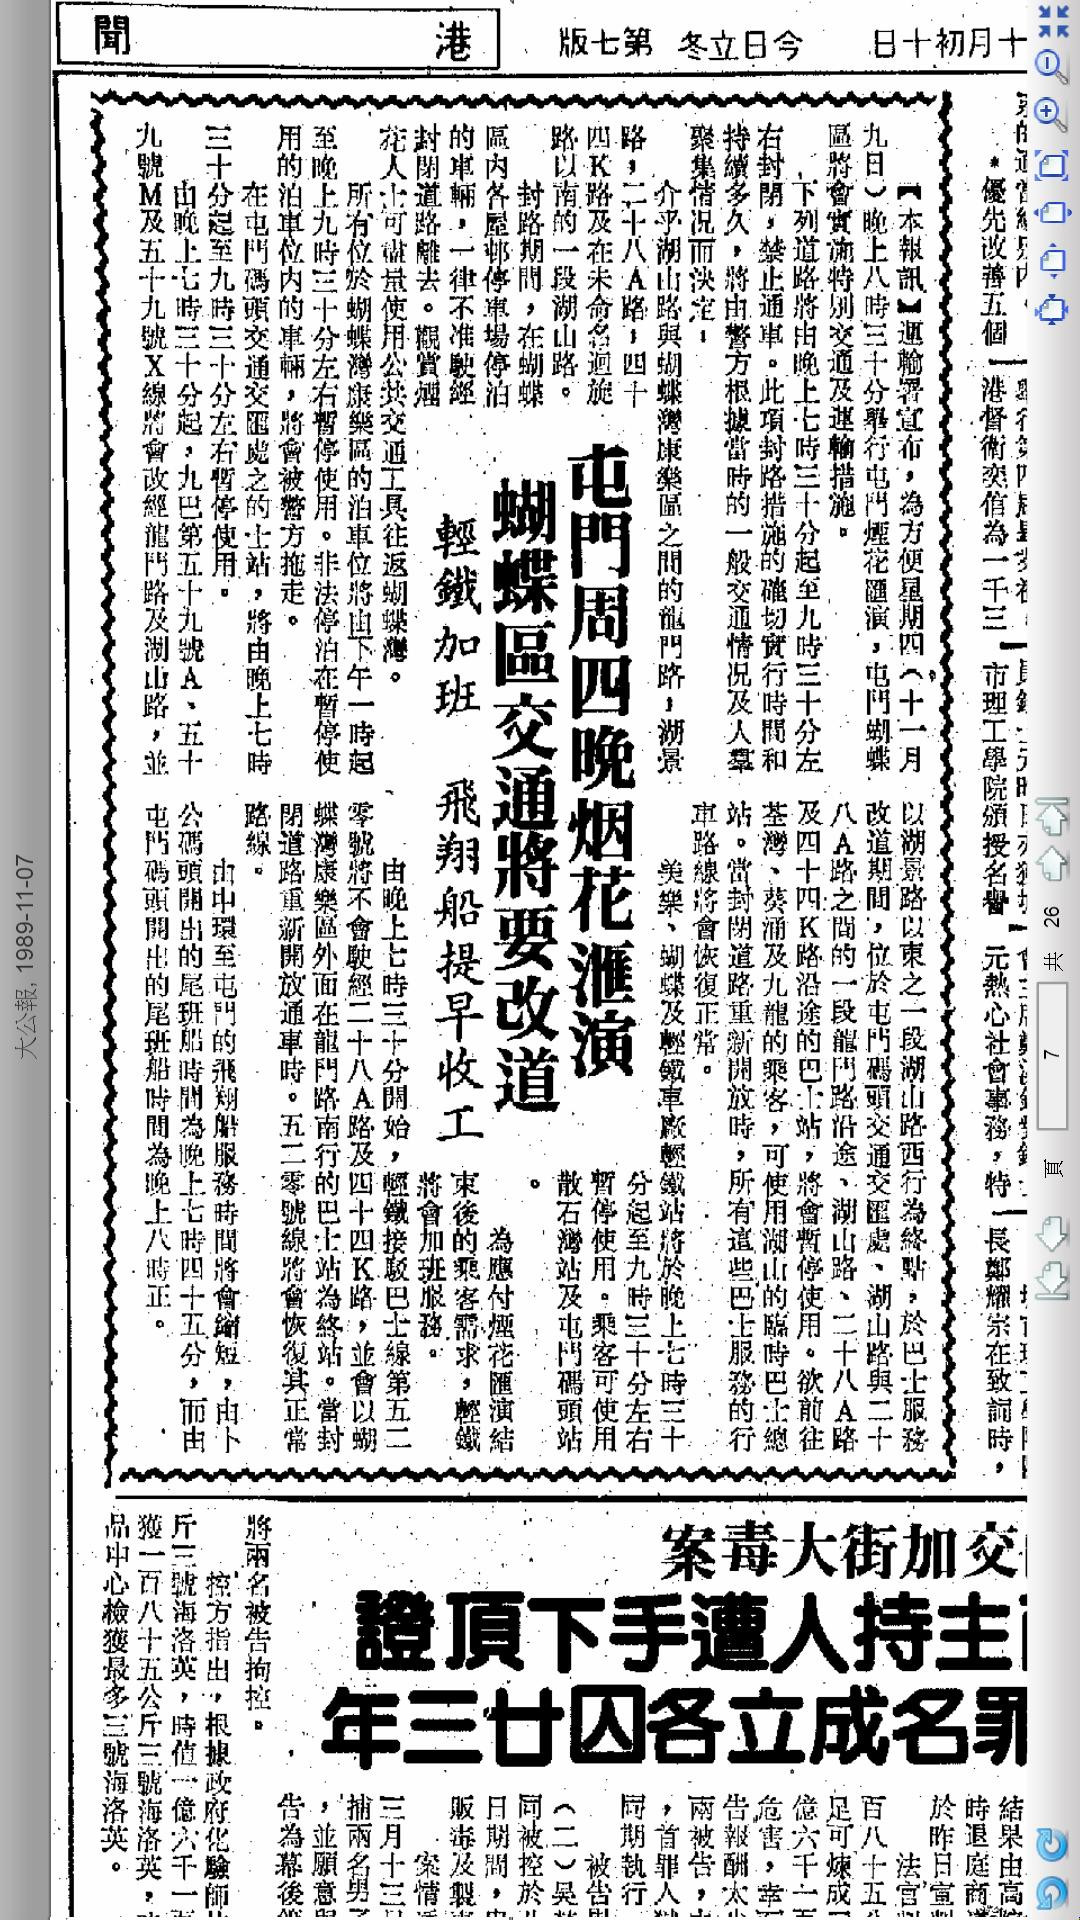 大公報 1989-11-07 (3).jpg